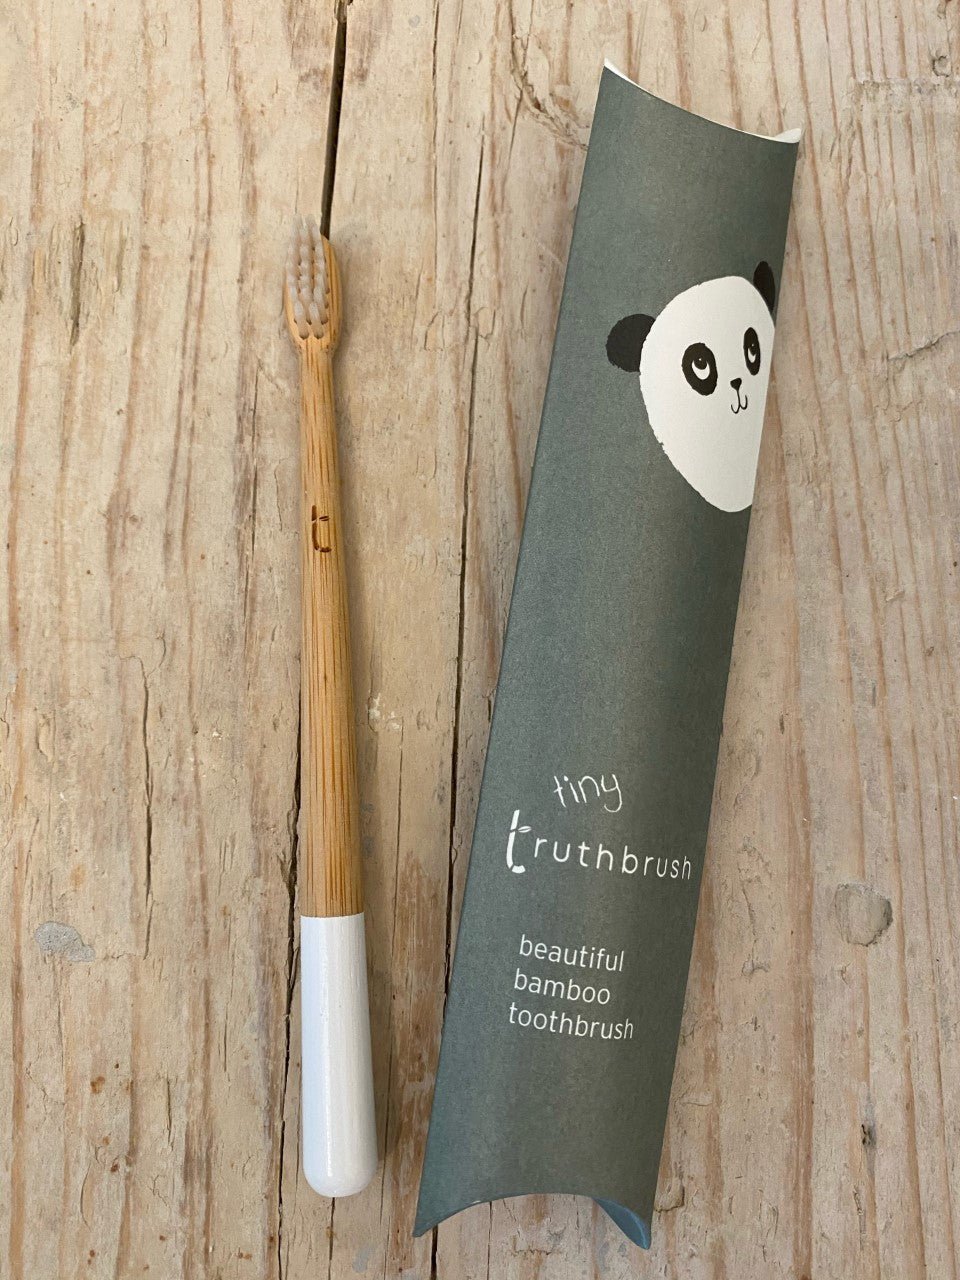 truthbrush - tiny bamboo toothbrush